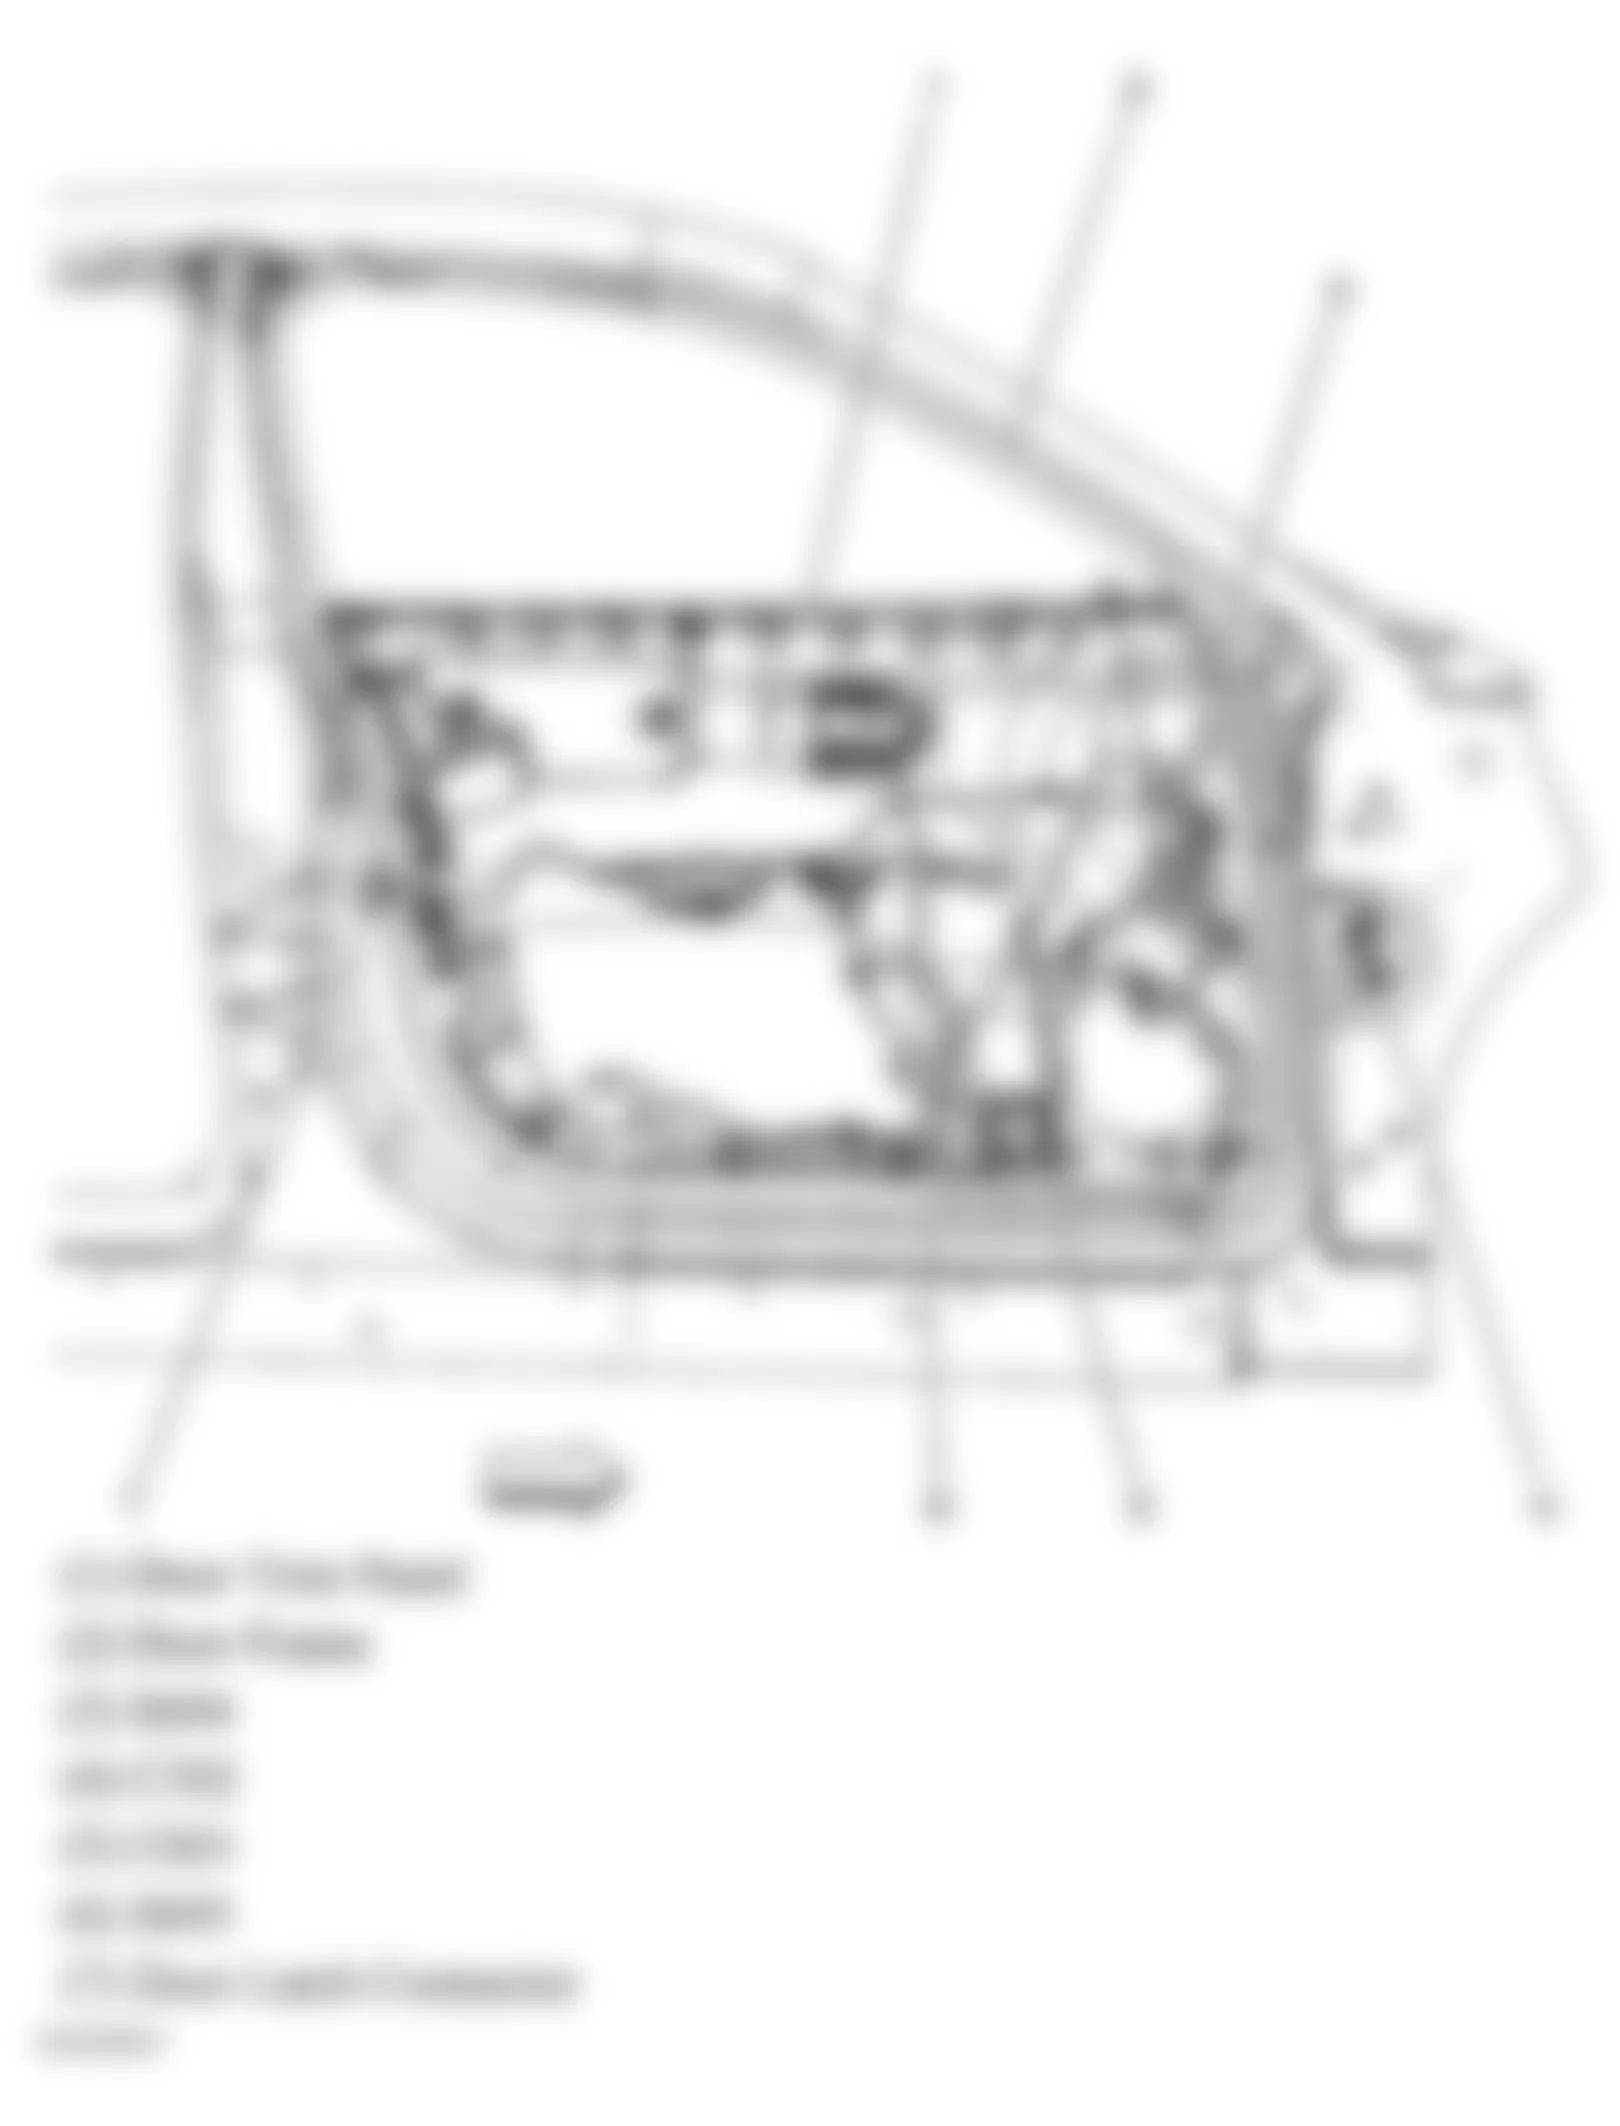 Buick Allure CXL 2005 - Component Locations -  Front Passengers Door